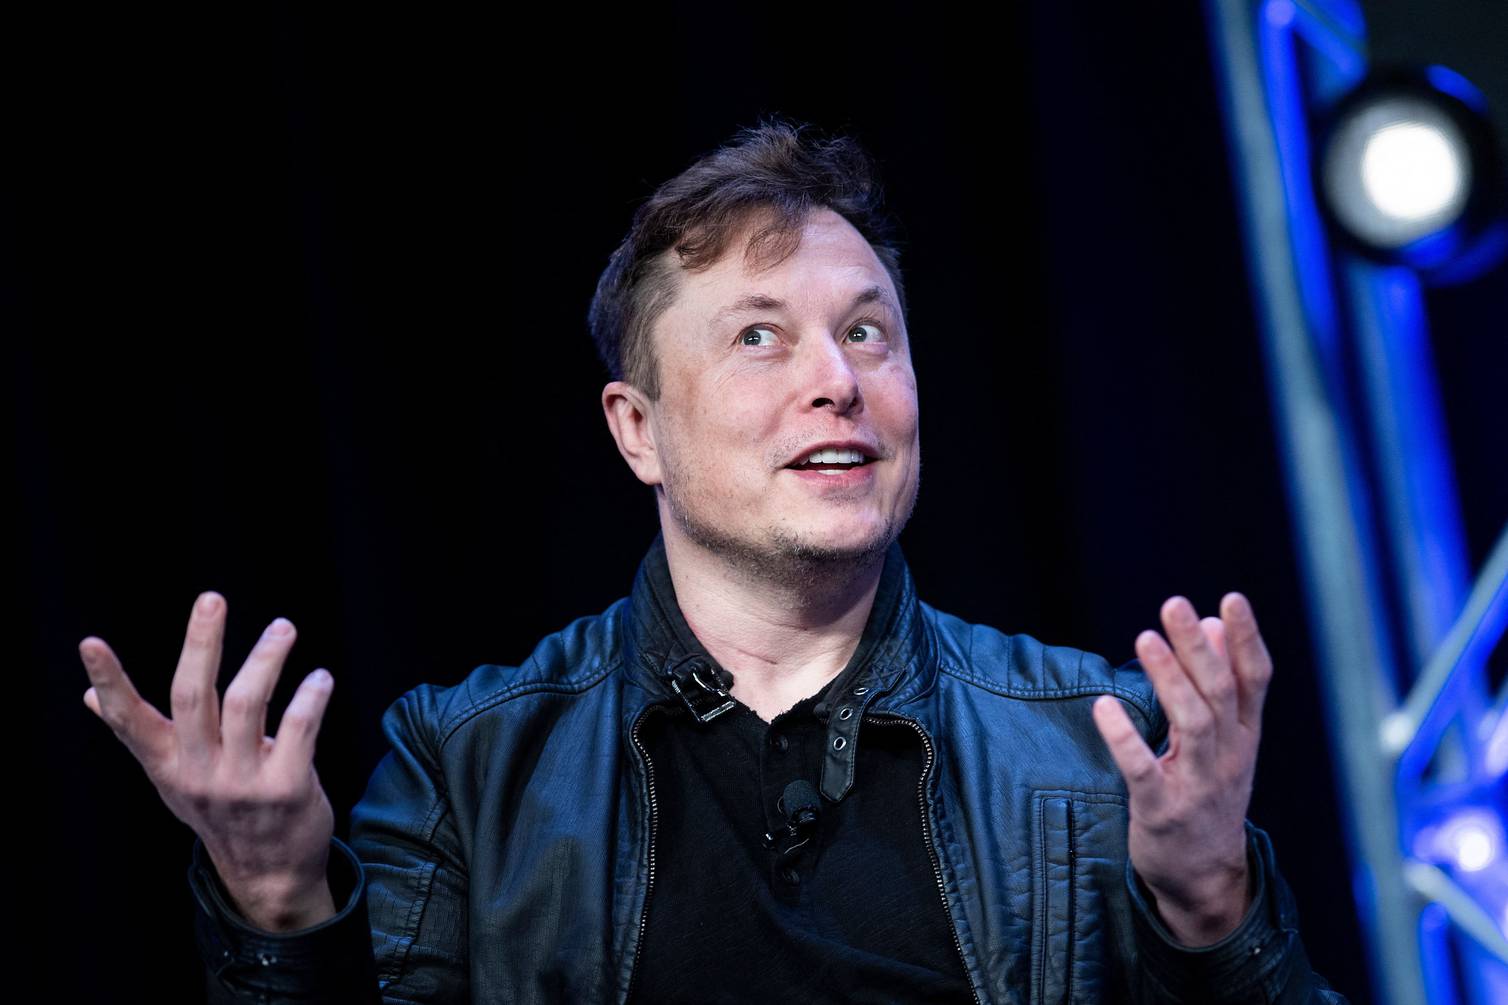 ¿Por qué Elon Musk tiene tanto éxito? 4 elementos claves de su personalidad